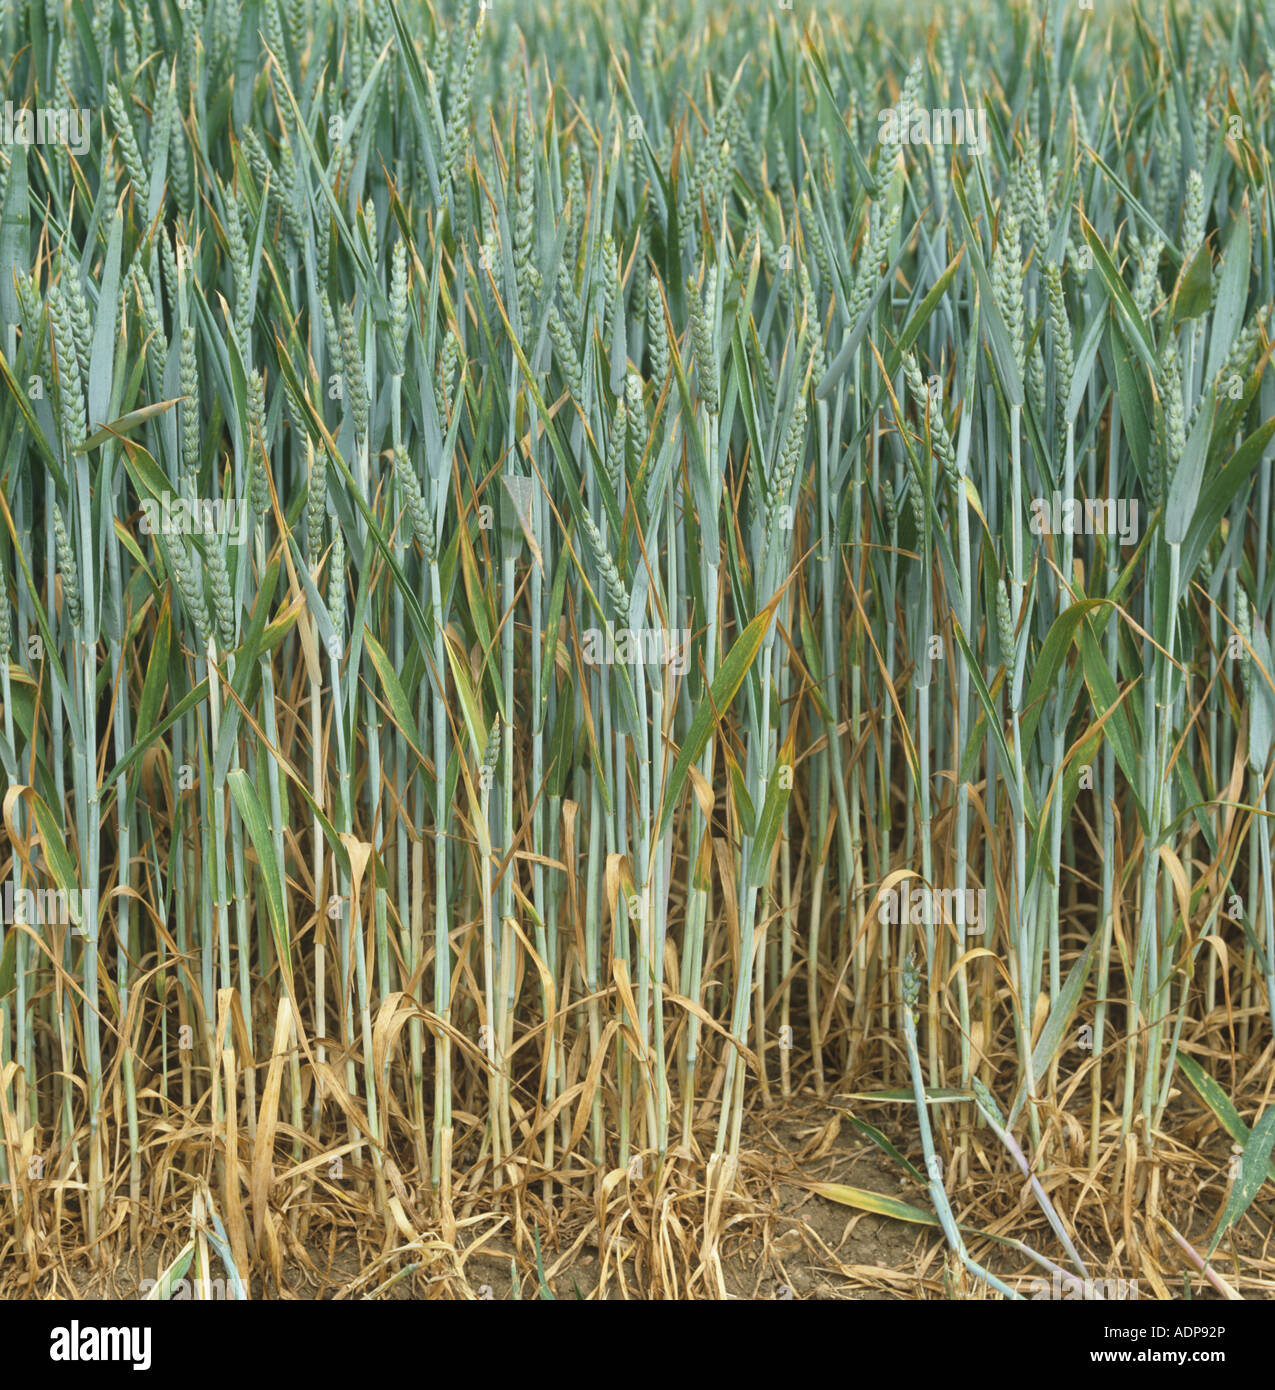 La siccità ha sollecitato il raccolto di grano senescing prematuramente durante un'estate calda asciutta Foto Stock